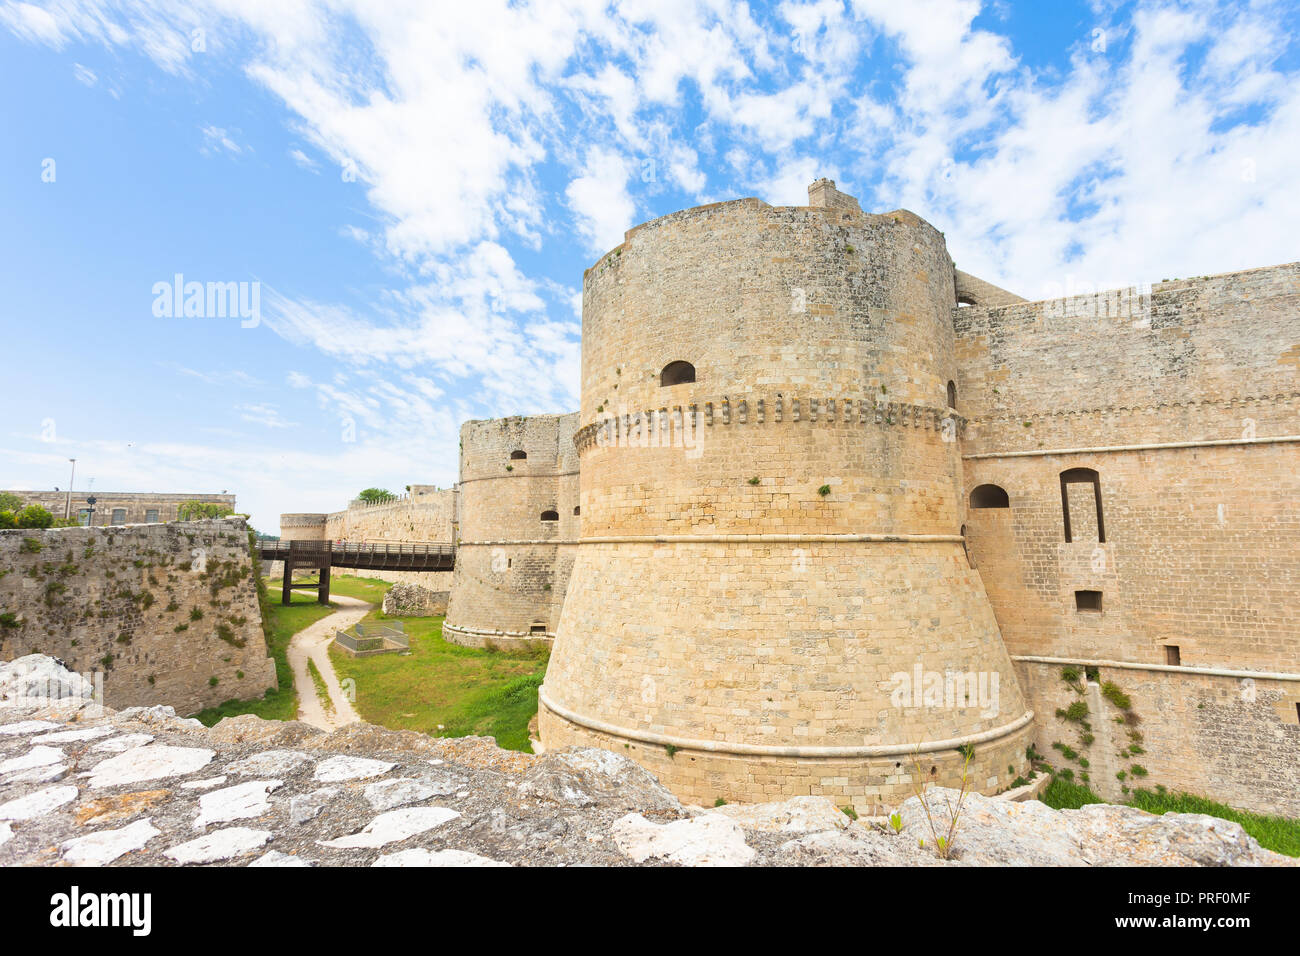 Otranto, Apulien, Italien - einem historischen Wehrturm als Teil der Stadtmauer von Otranto in Italien Stockfoto